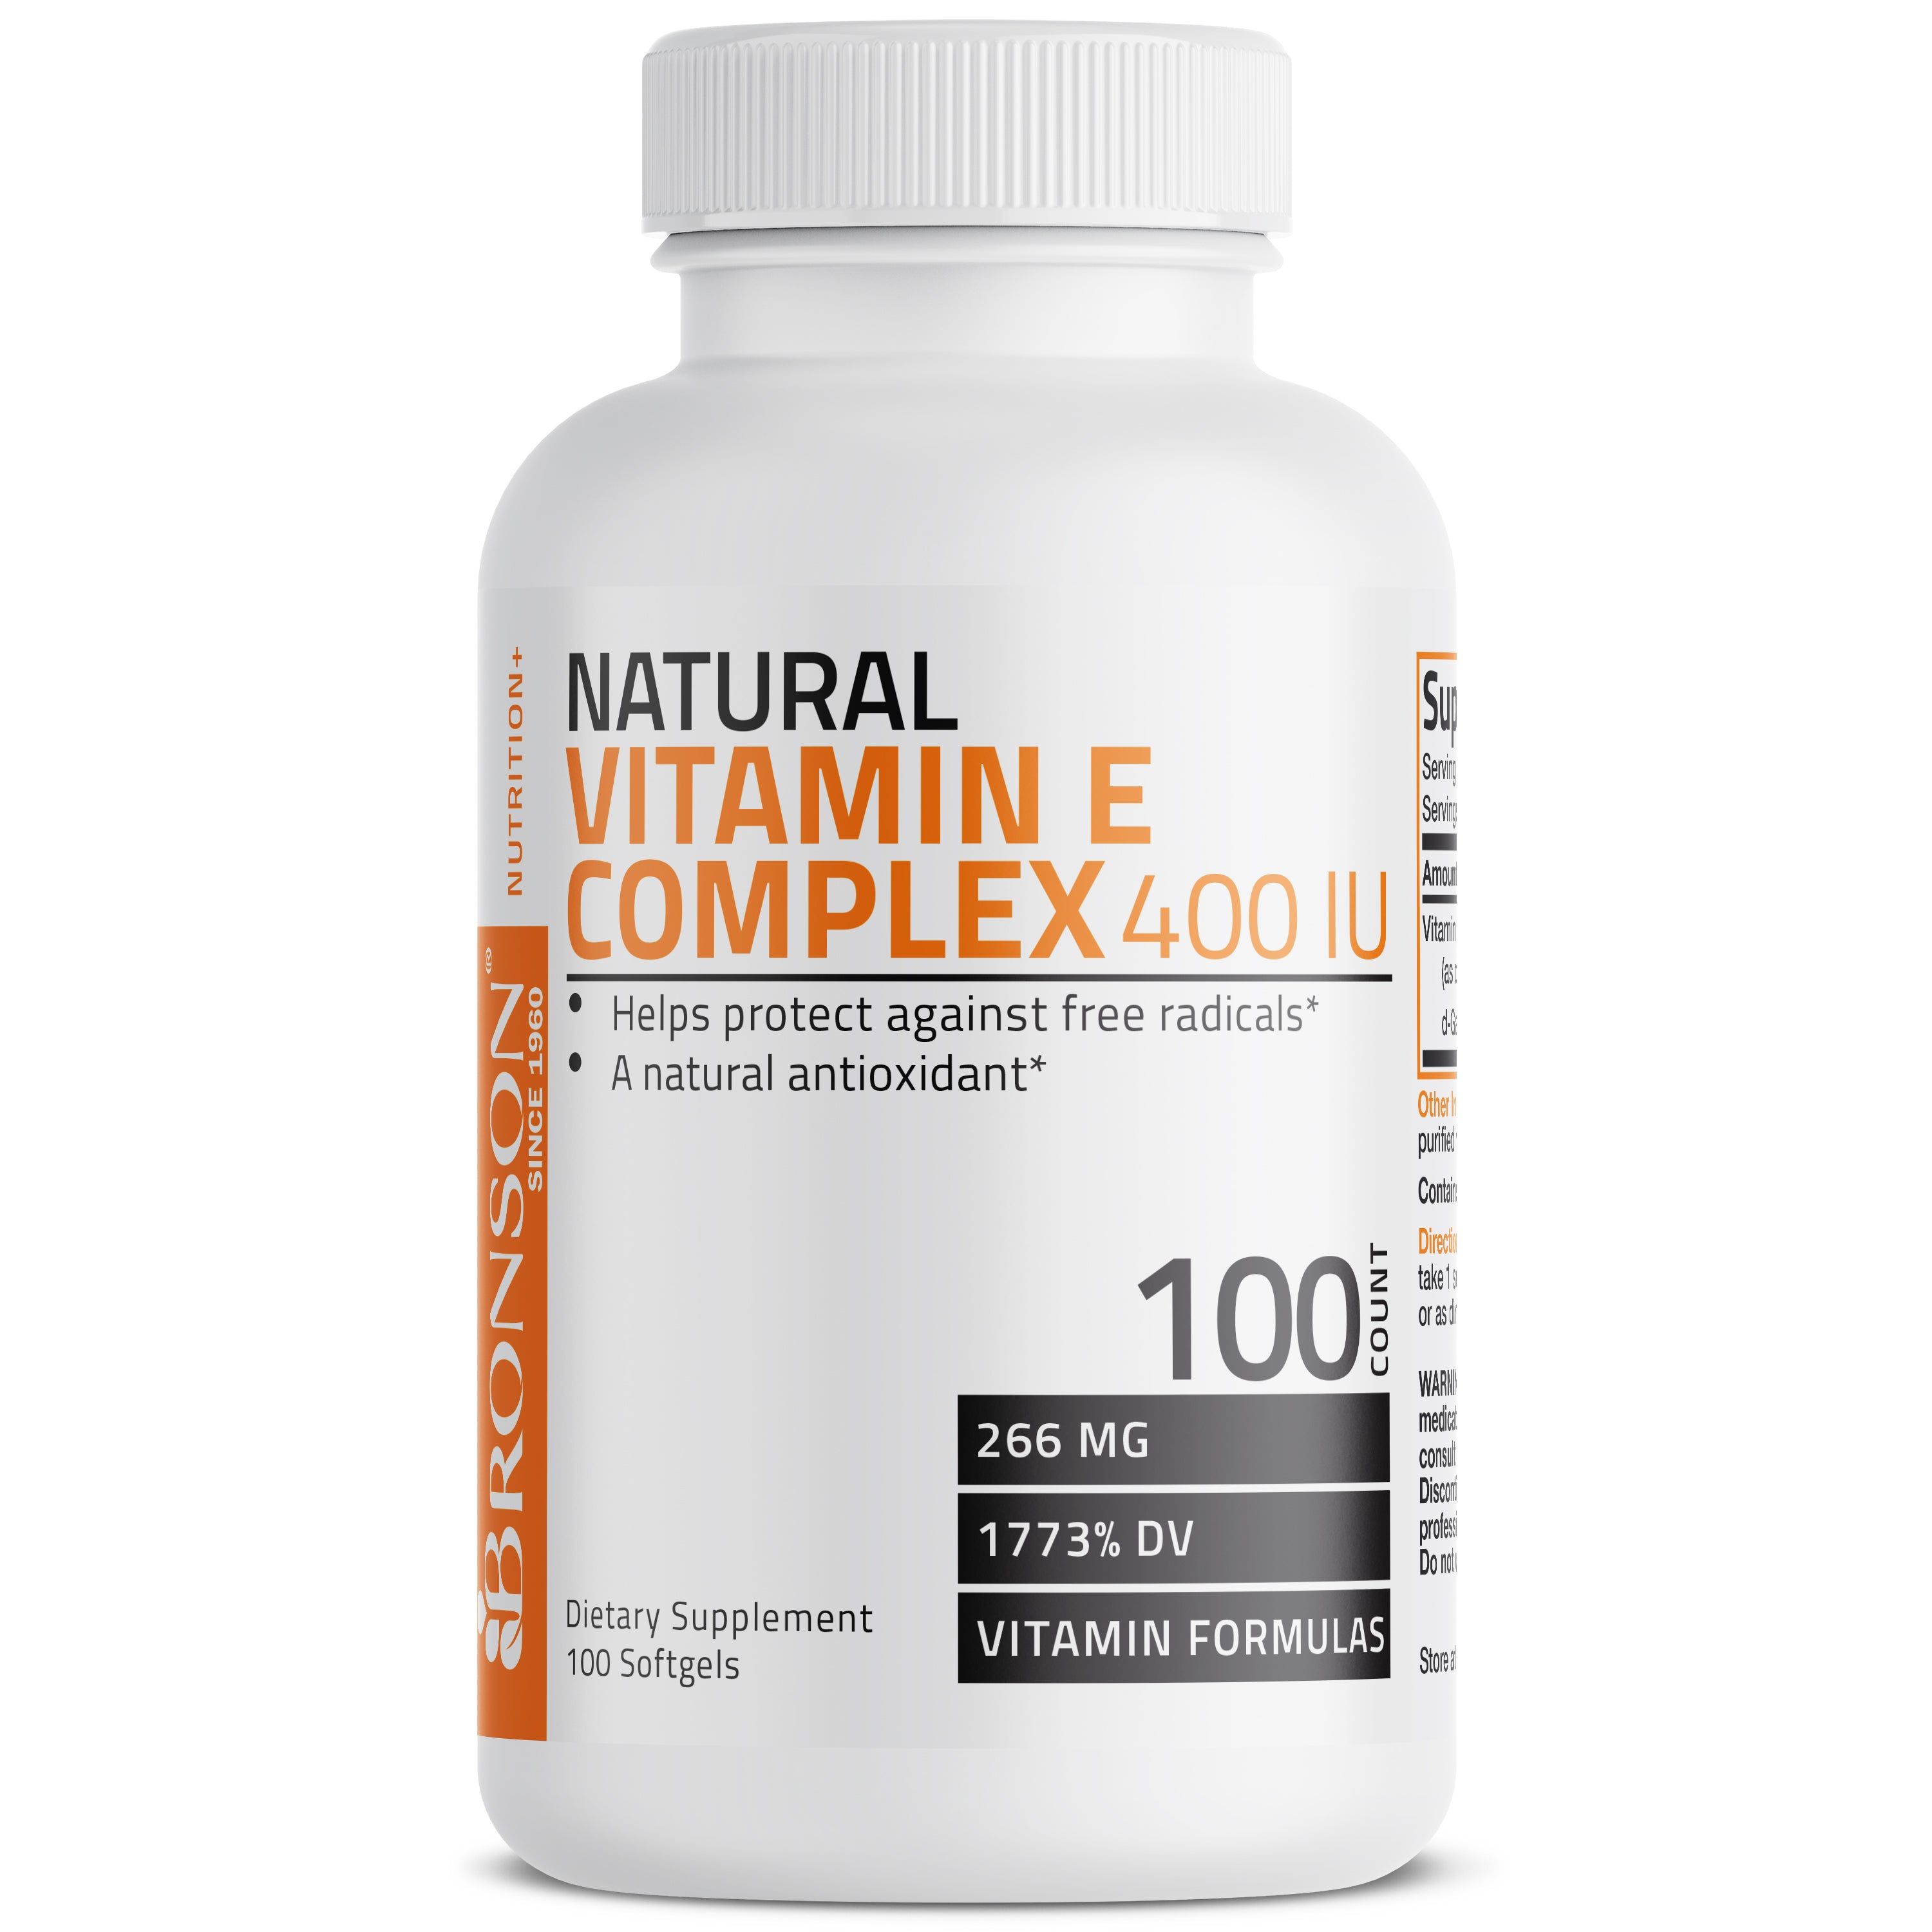 Natural Vitamin E Complex - 400 IU view 1 of 8